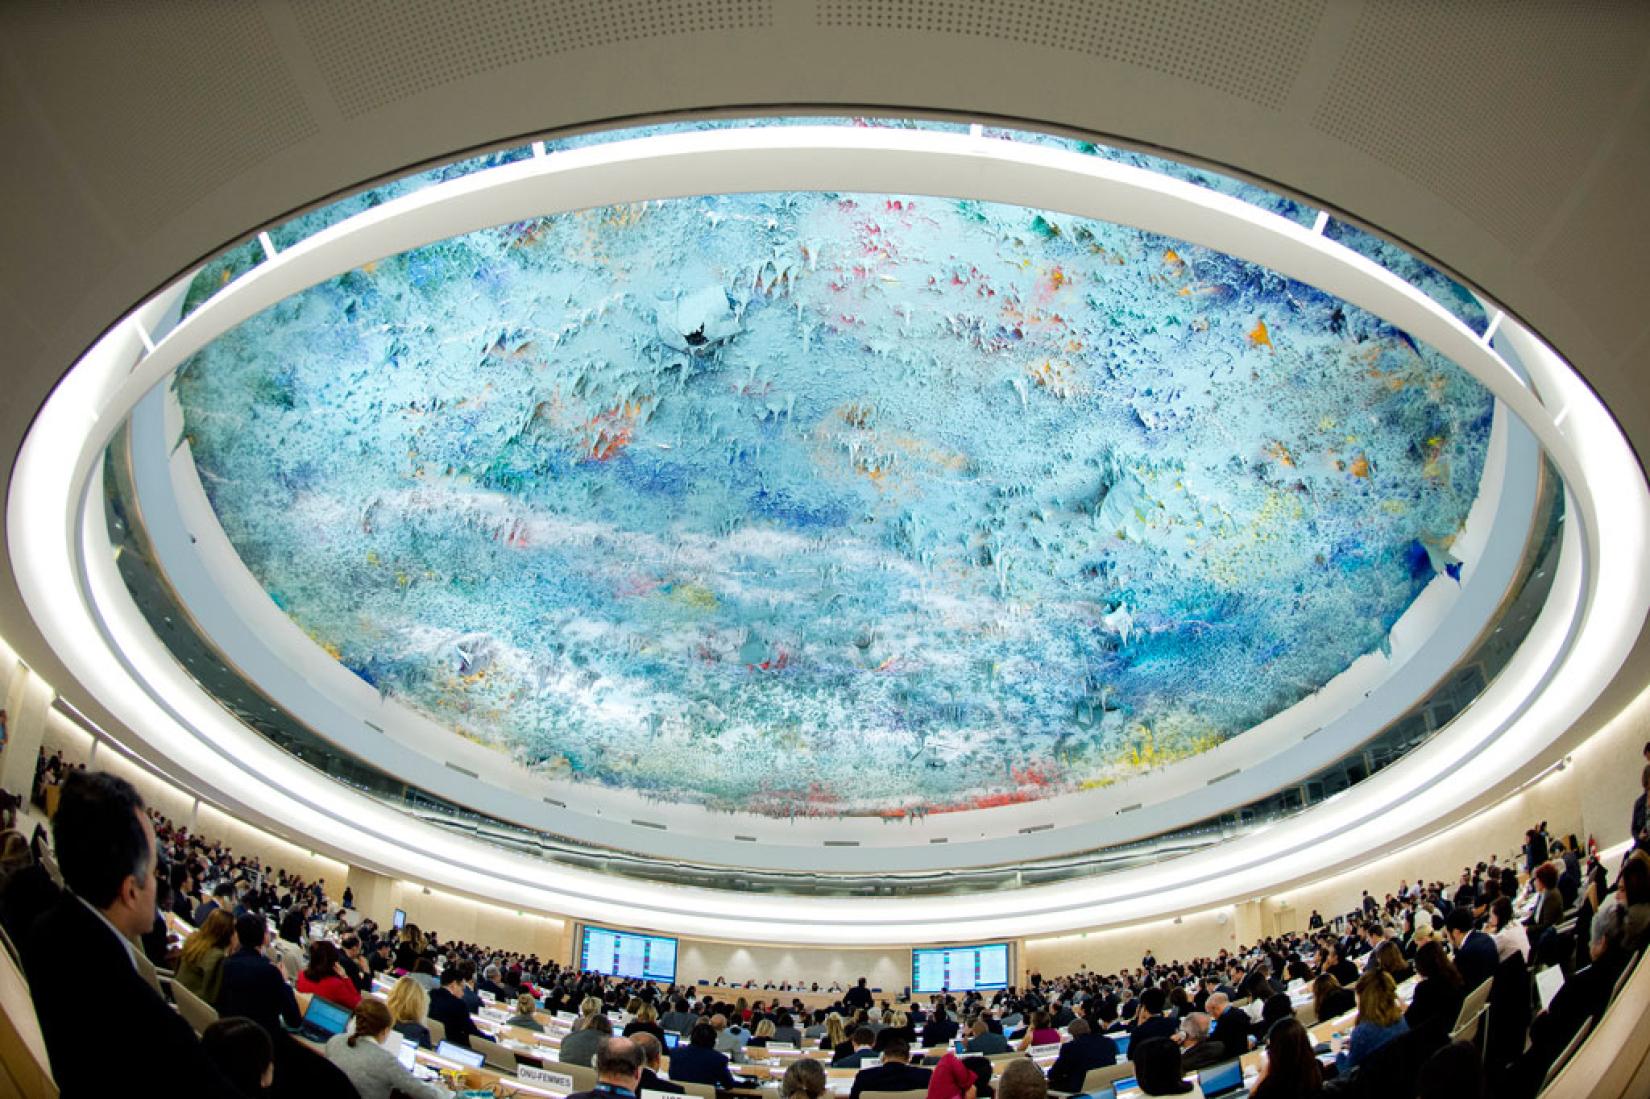 Membros do Conselho de Direitos Humanos precisam reforçar ligação entre direitos humanos, paz, segurança e desenvolvimento, disse Ban Ki-moon. Foto: ONU.